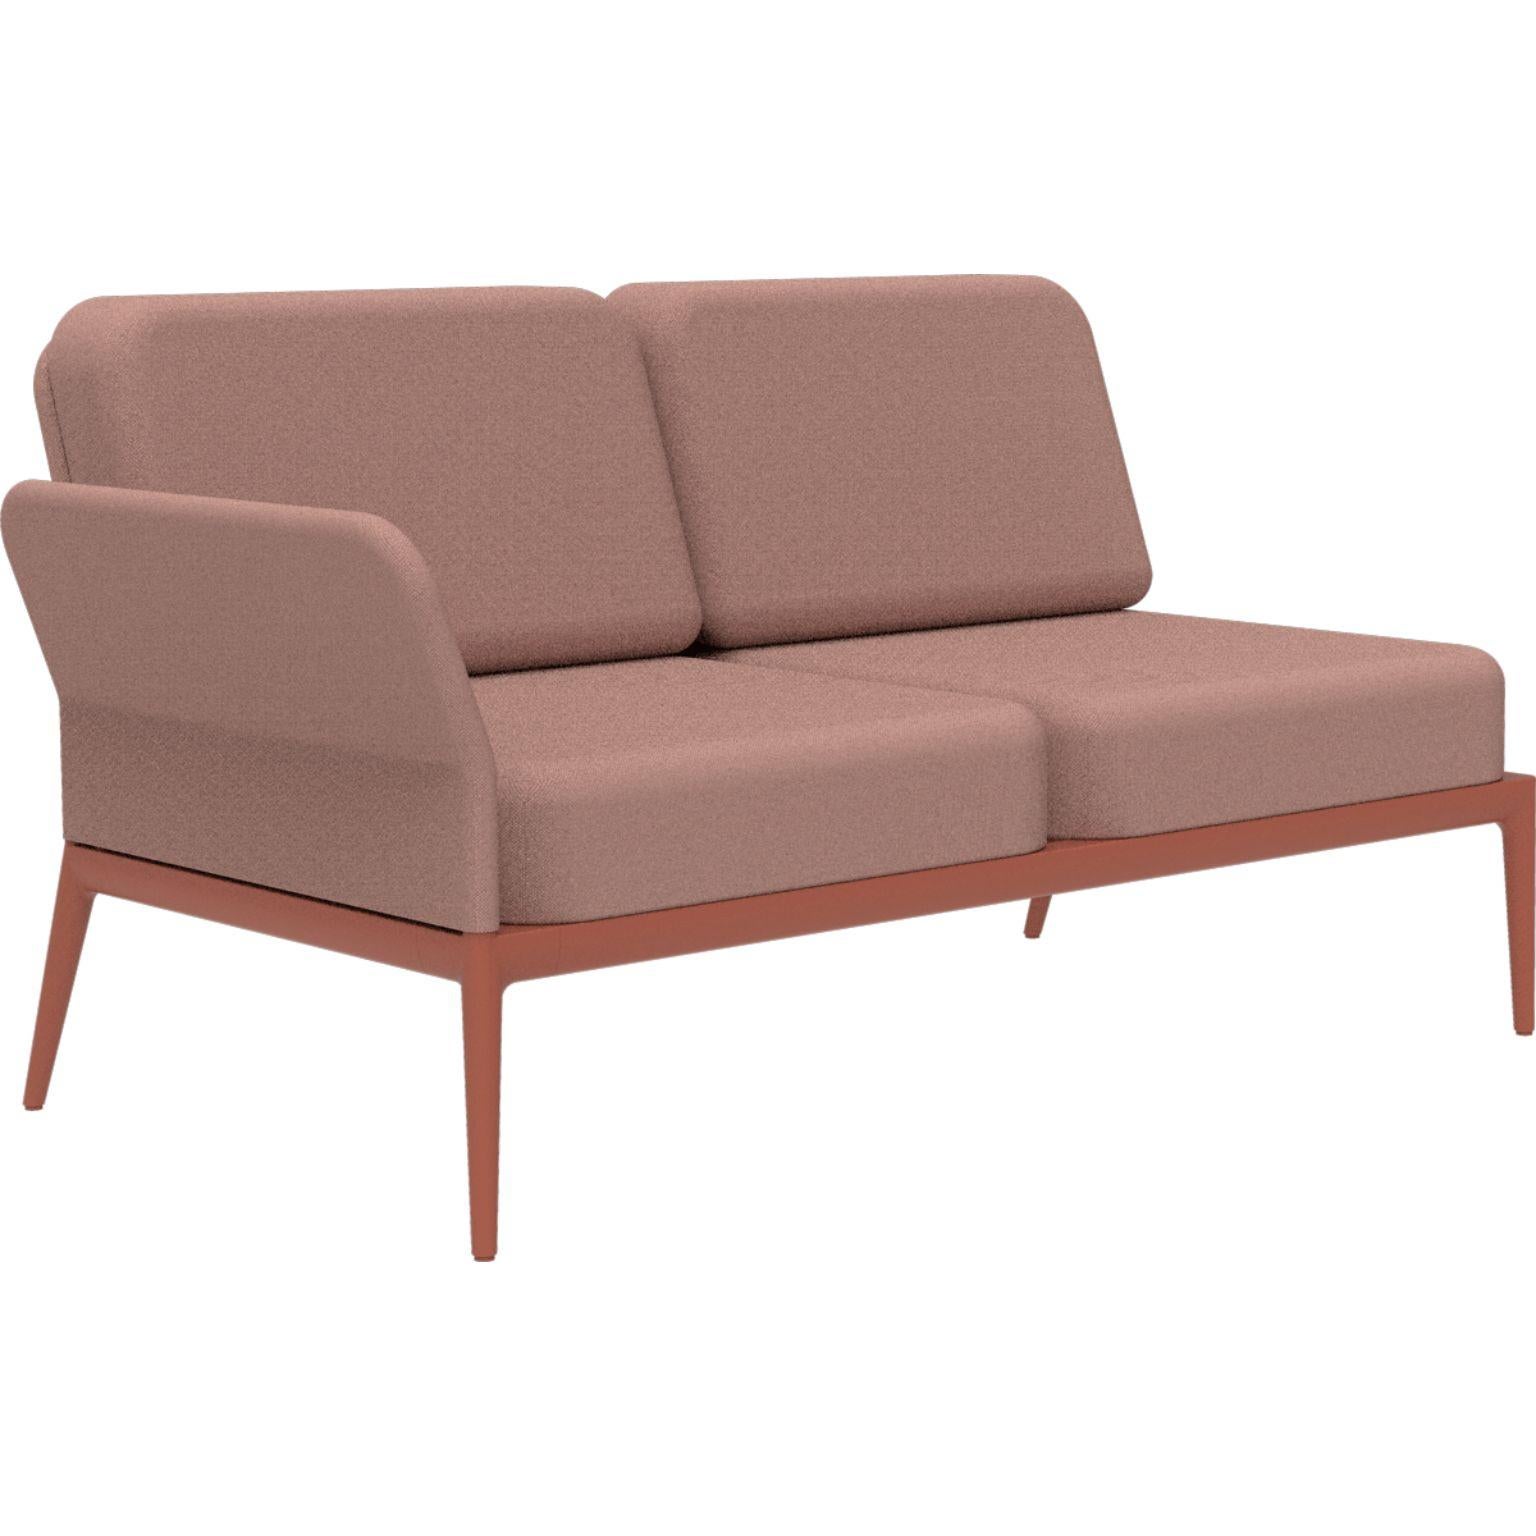 Bezug Salmon Double Right Modular Sofa von MOWEE
Abmessungen: T83 x B148 x H81 cm (Sitzhöhe 42 cm).
MATERIAL: Aluminium und Polstermaterial.
Gewicht: 29 kg.
Auch in verschiedenen Farben und Ausführungen erhältlich. 

Eine Collection'S, die durch